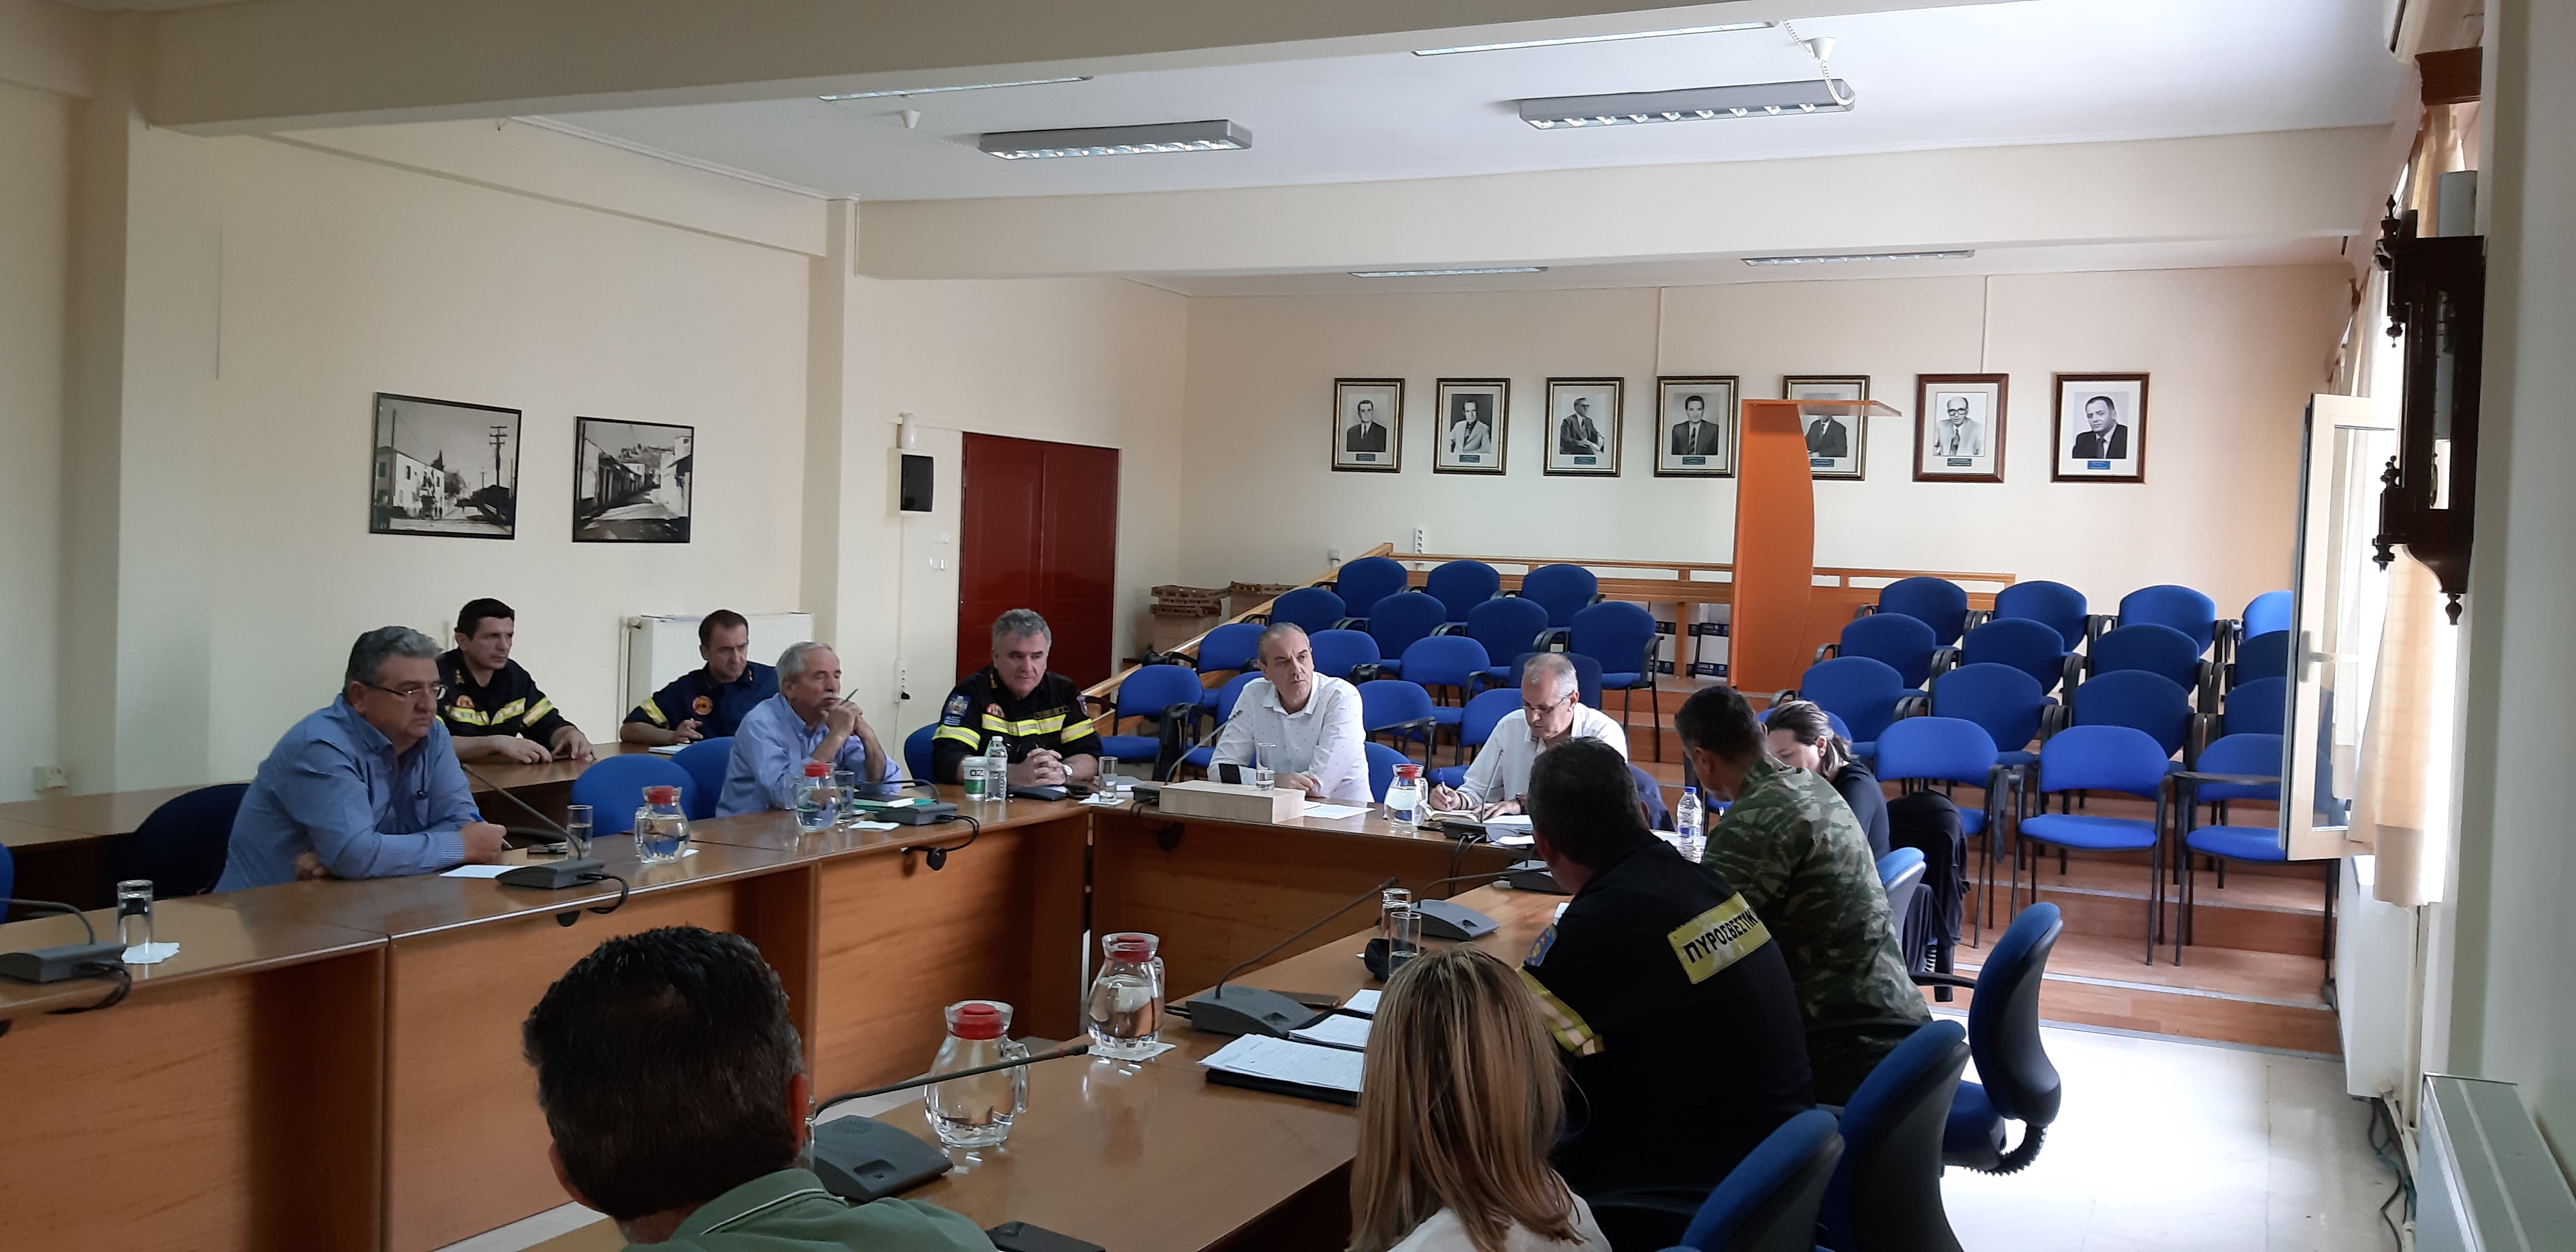 Ν. Γάτσας: "Υψηλό το επίπεδο της πολιτικής προστασίας στο Δήμο Ελασσόνας"